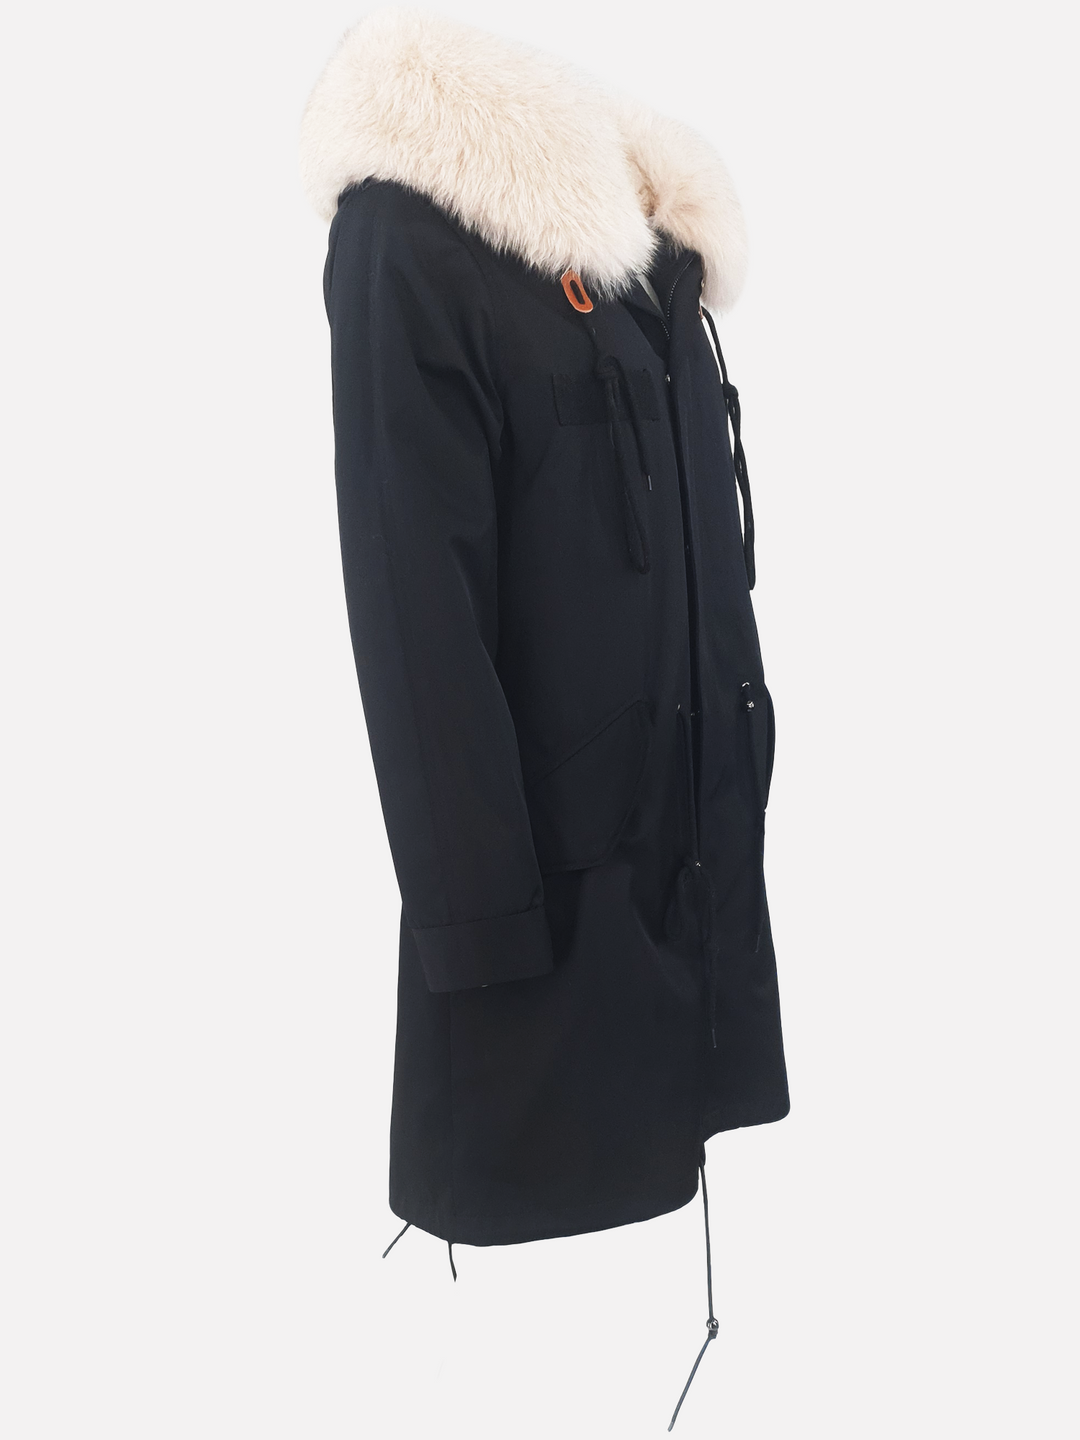 K1685, 95 cm. sort dame parka frakke